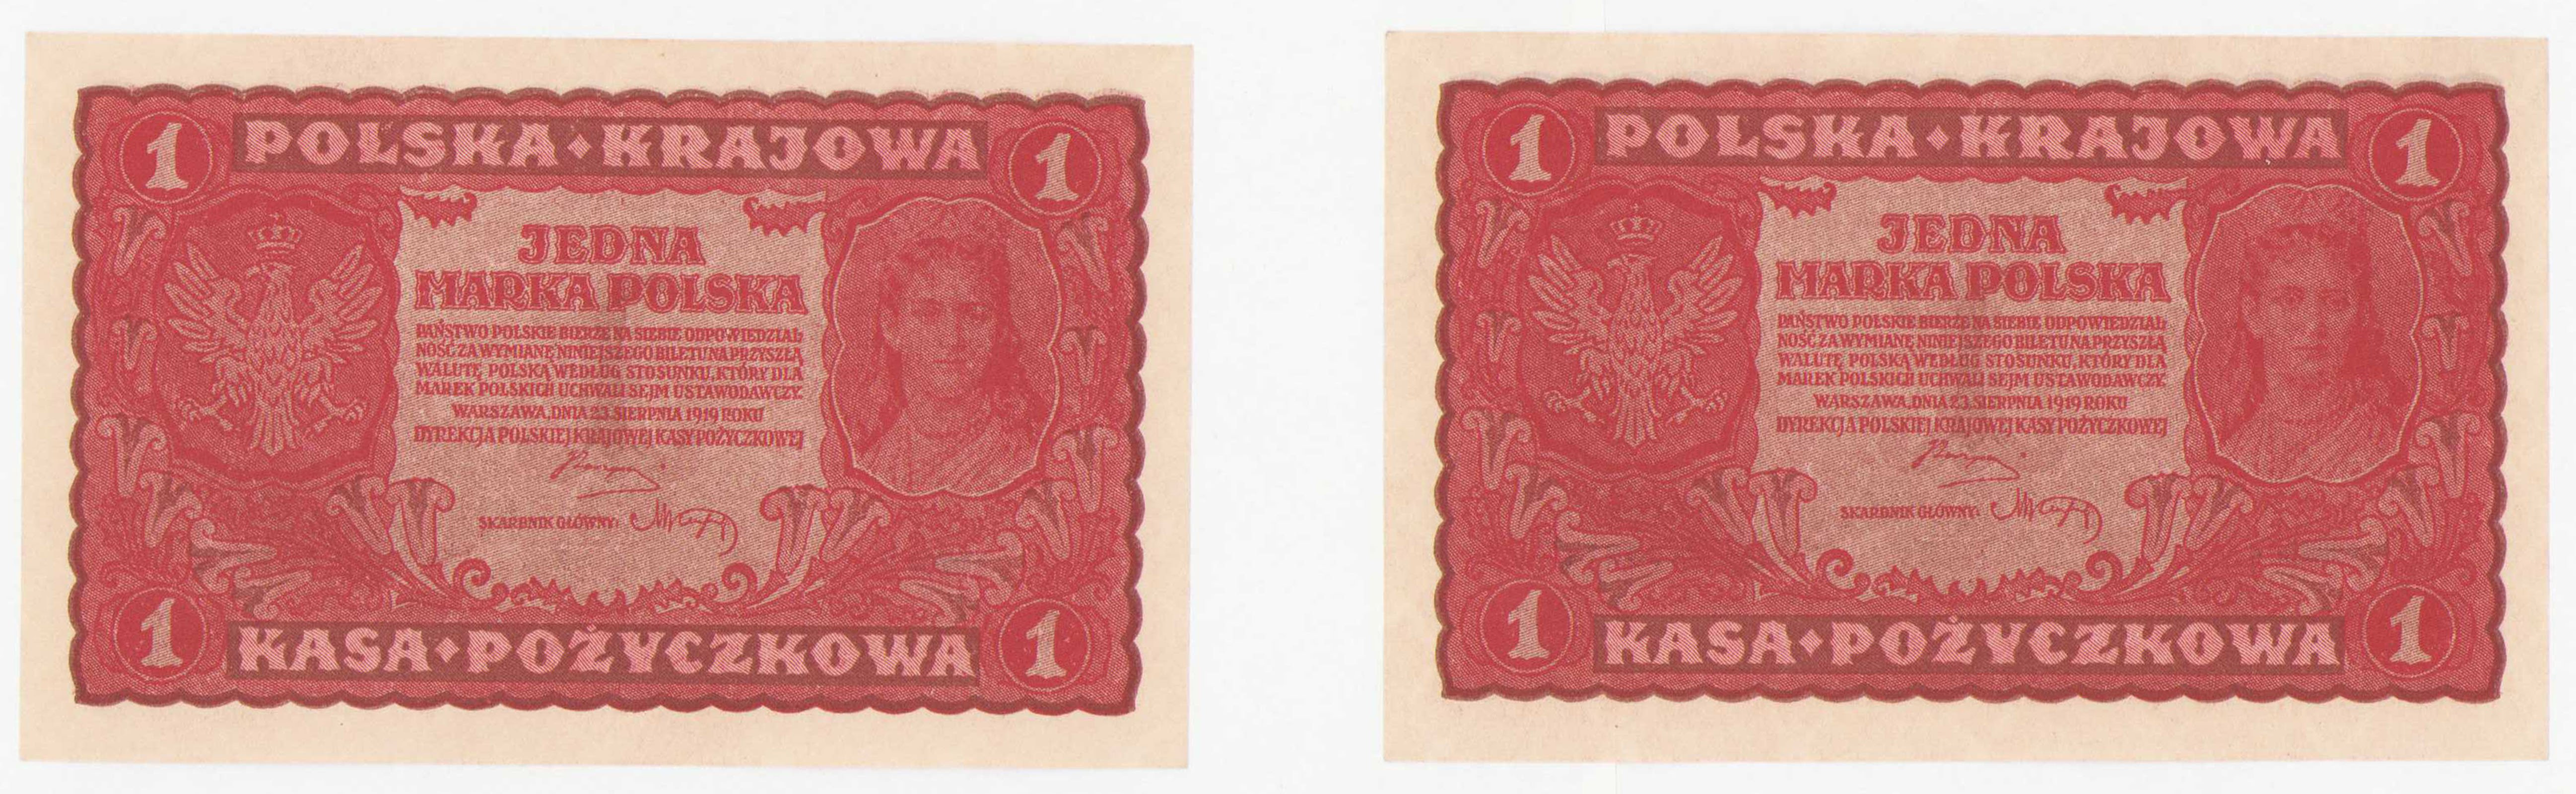 1 marka polska 1919 seria I-N, zestaw 2 sztuk